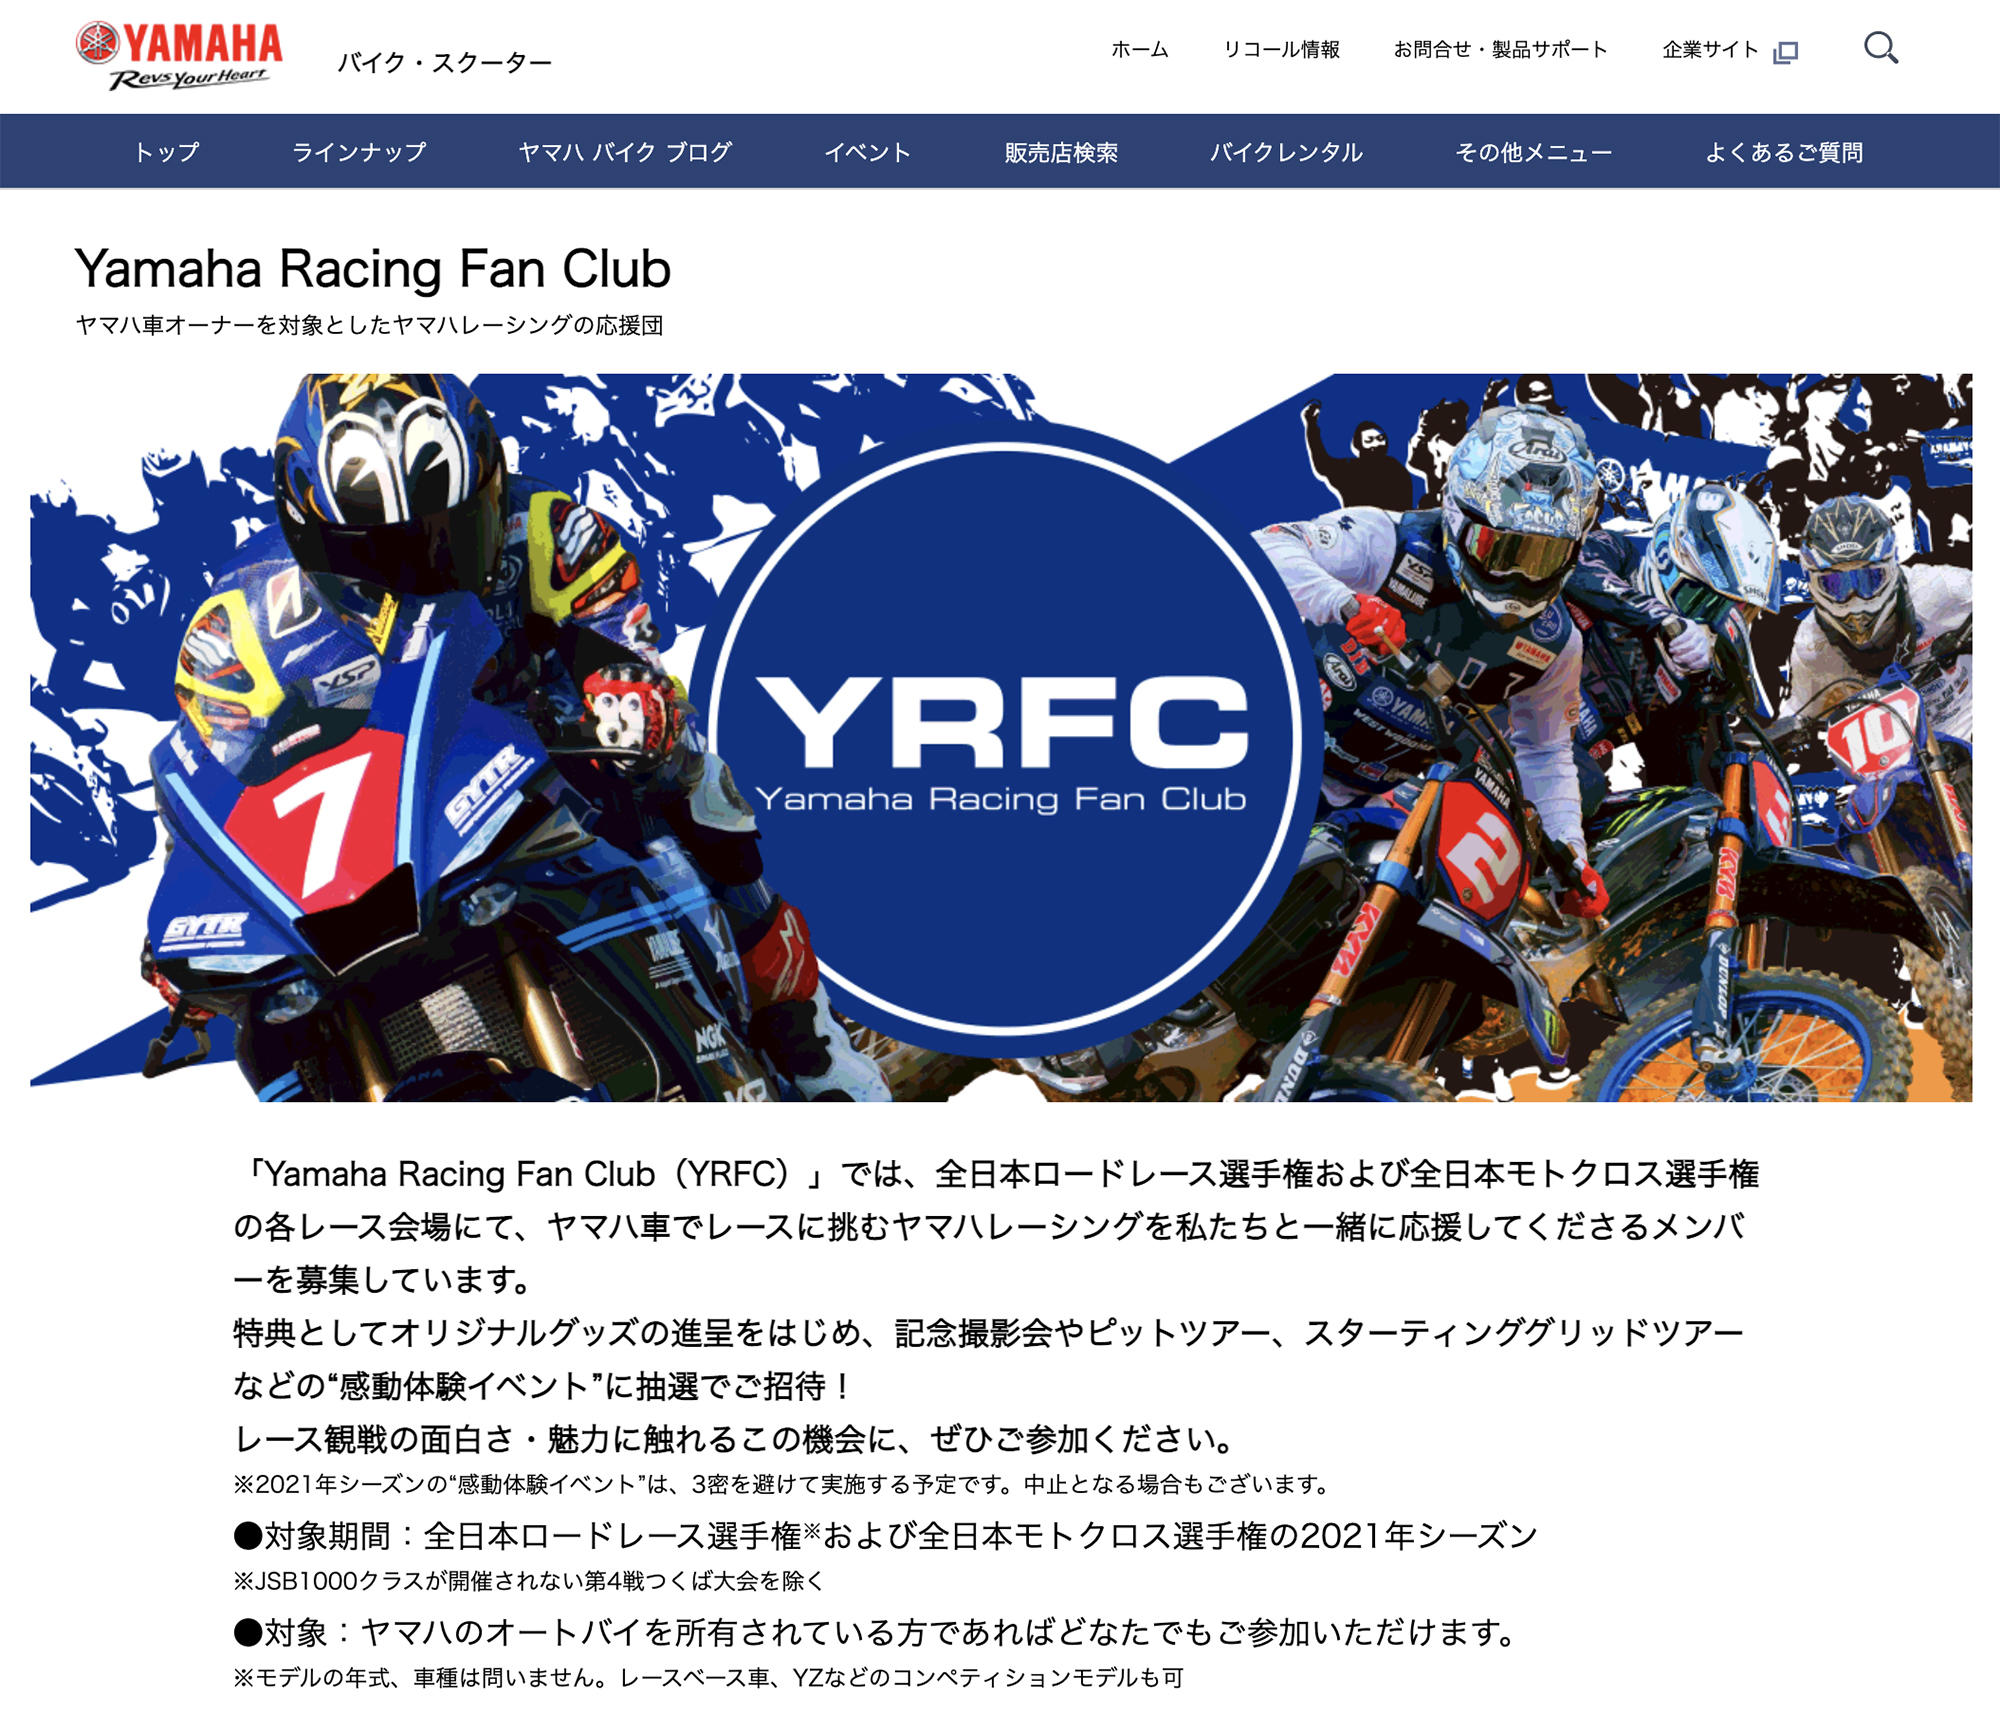 ヤマハレーシング応援団「Yamaha Racing Fan Club」